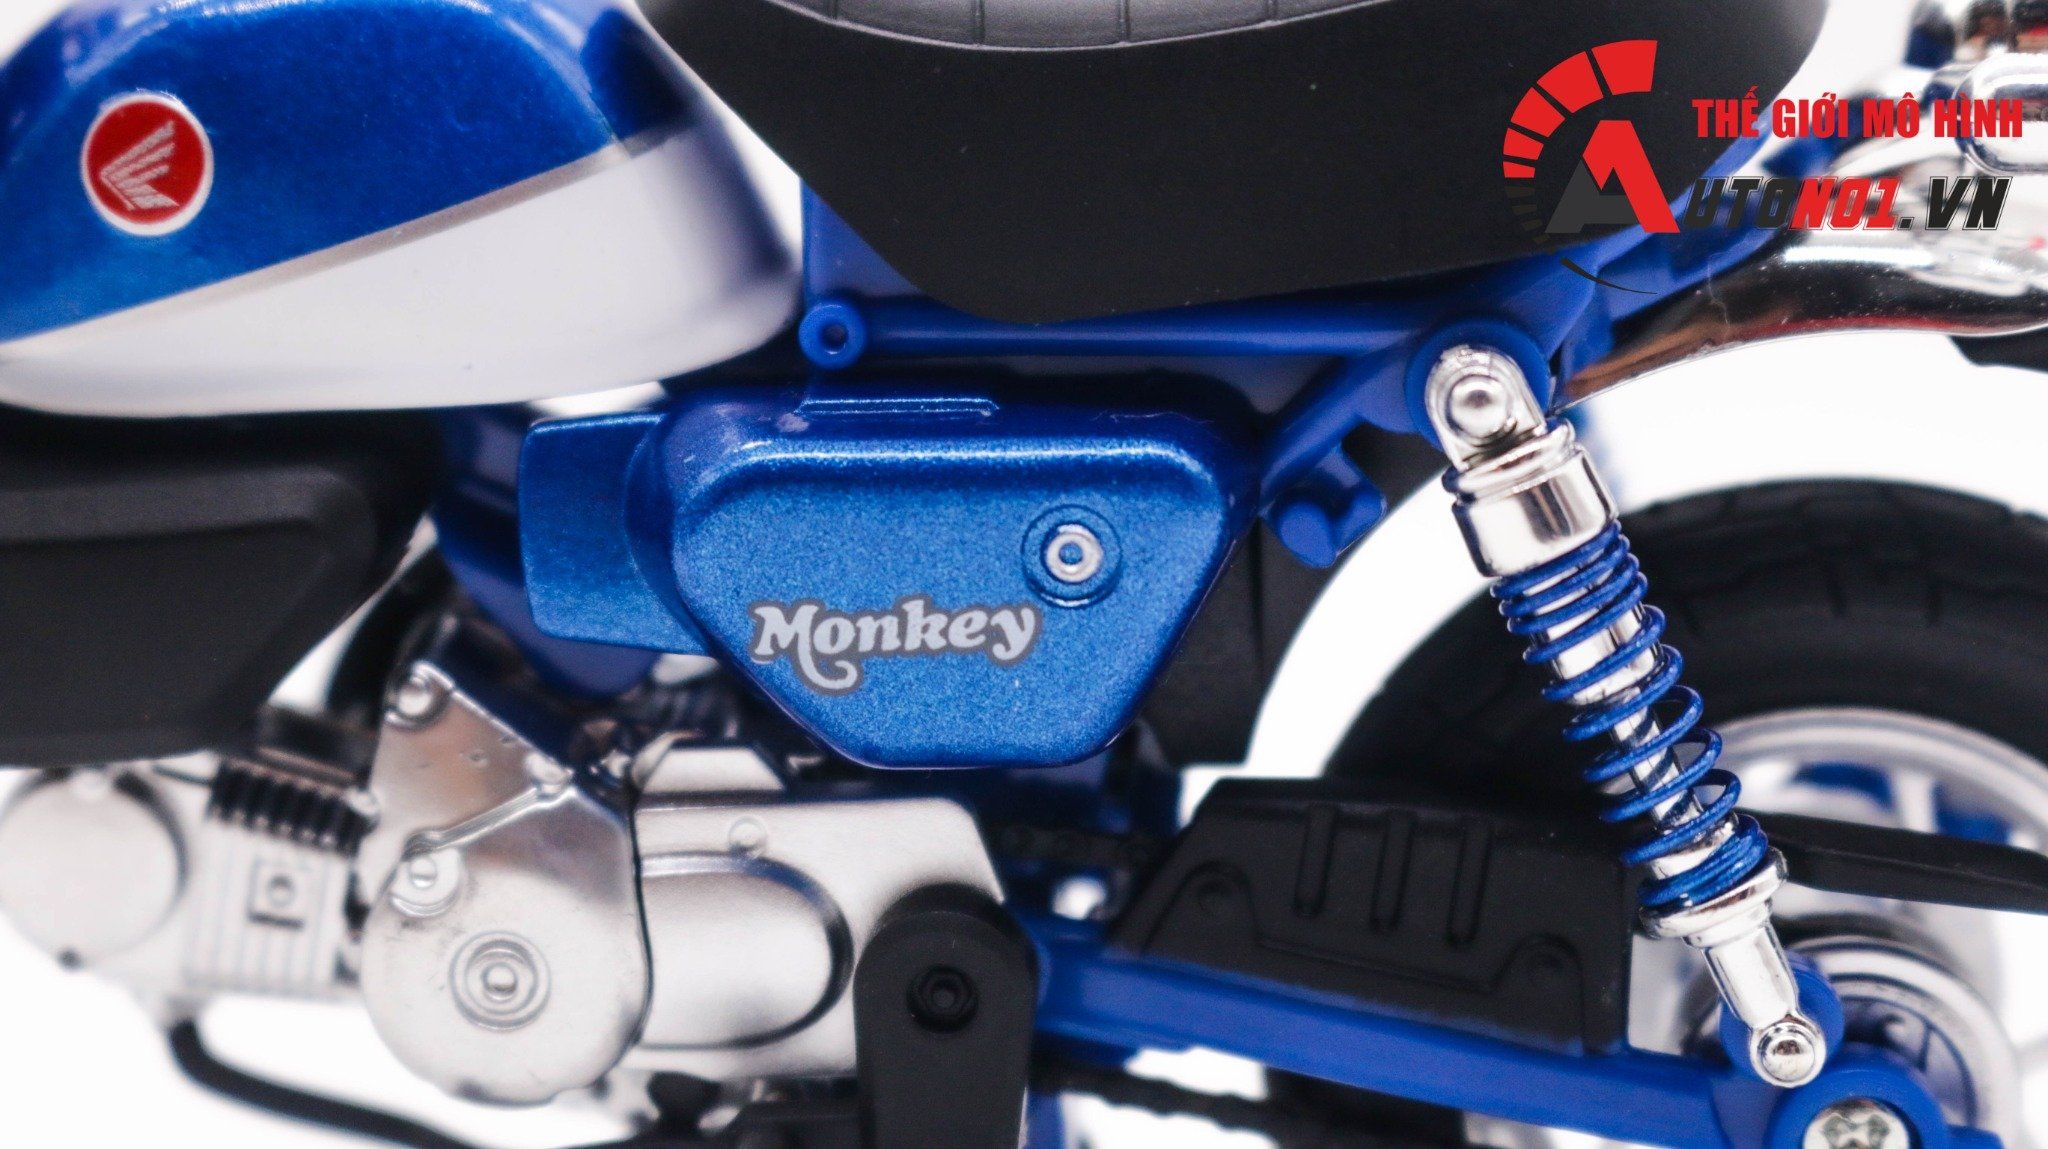  Mô hình xe Honda Monkey 125cc 1:12 Huayi Alloy MT065 